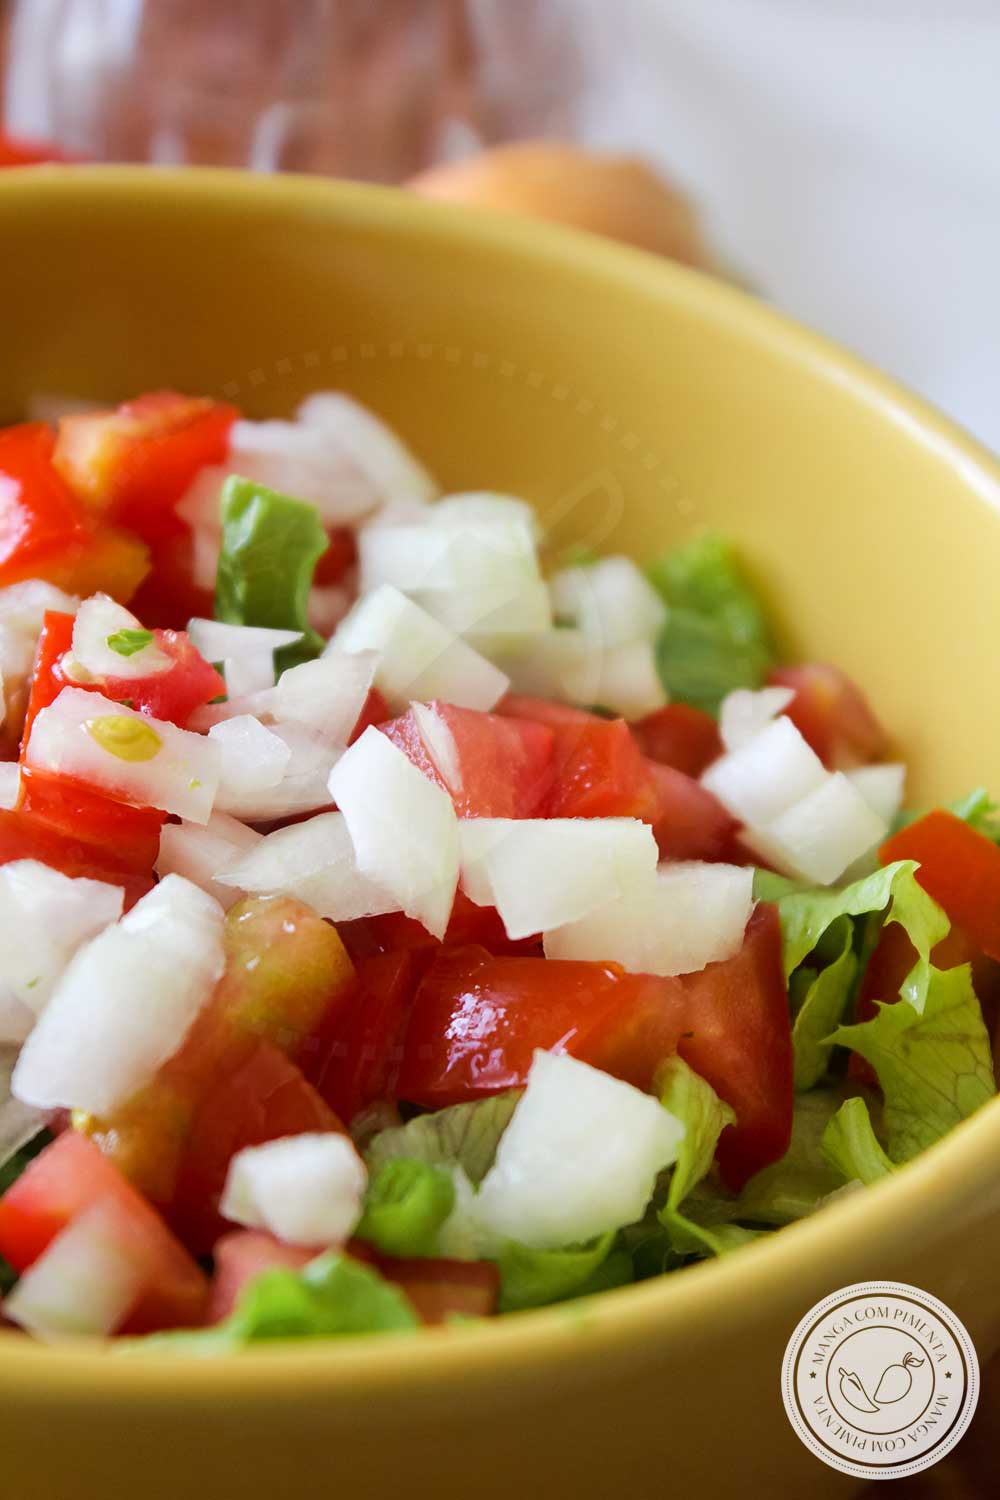 Receita de Molho para Salada Verde - um simples vinagrete para temperar uma gostosa salada verde.